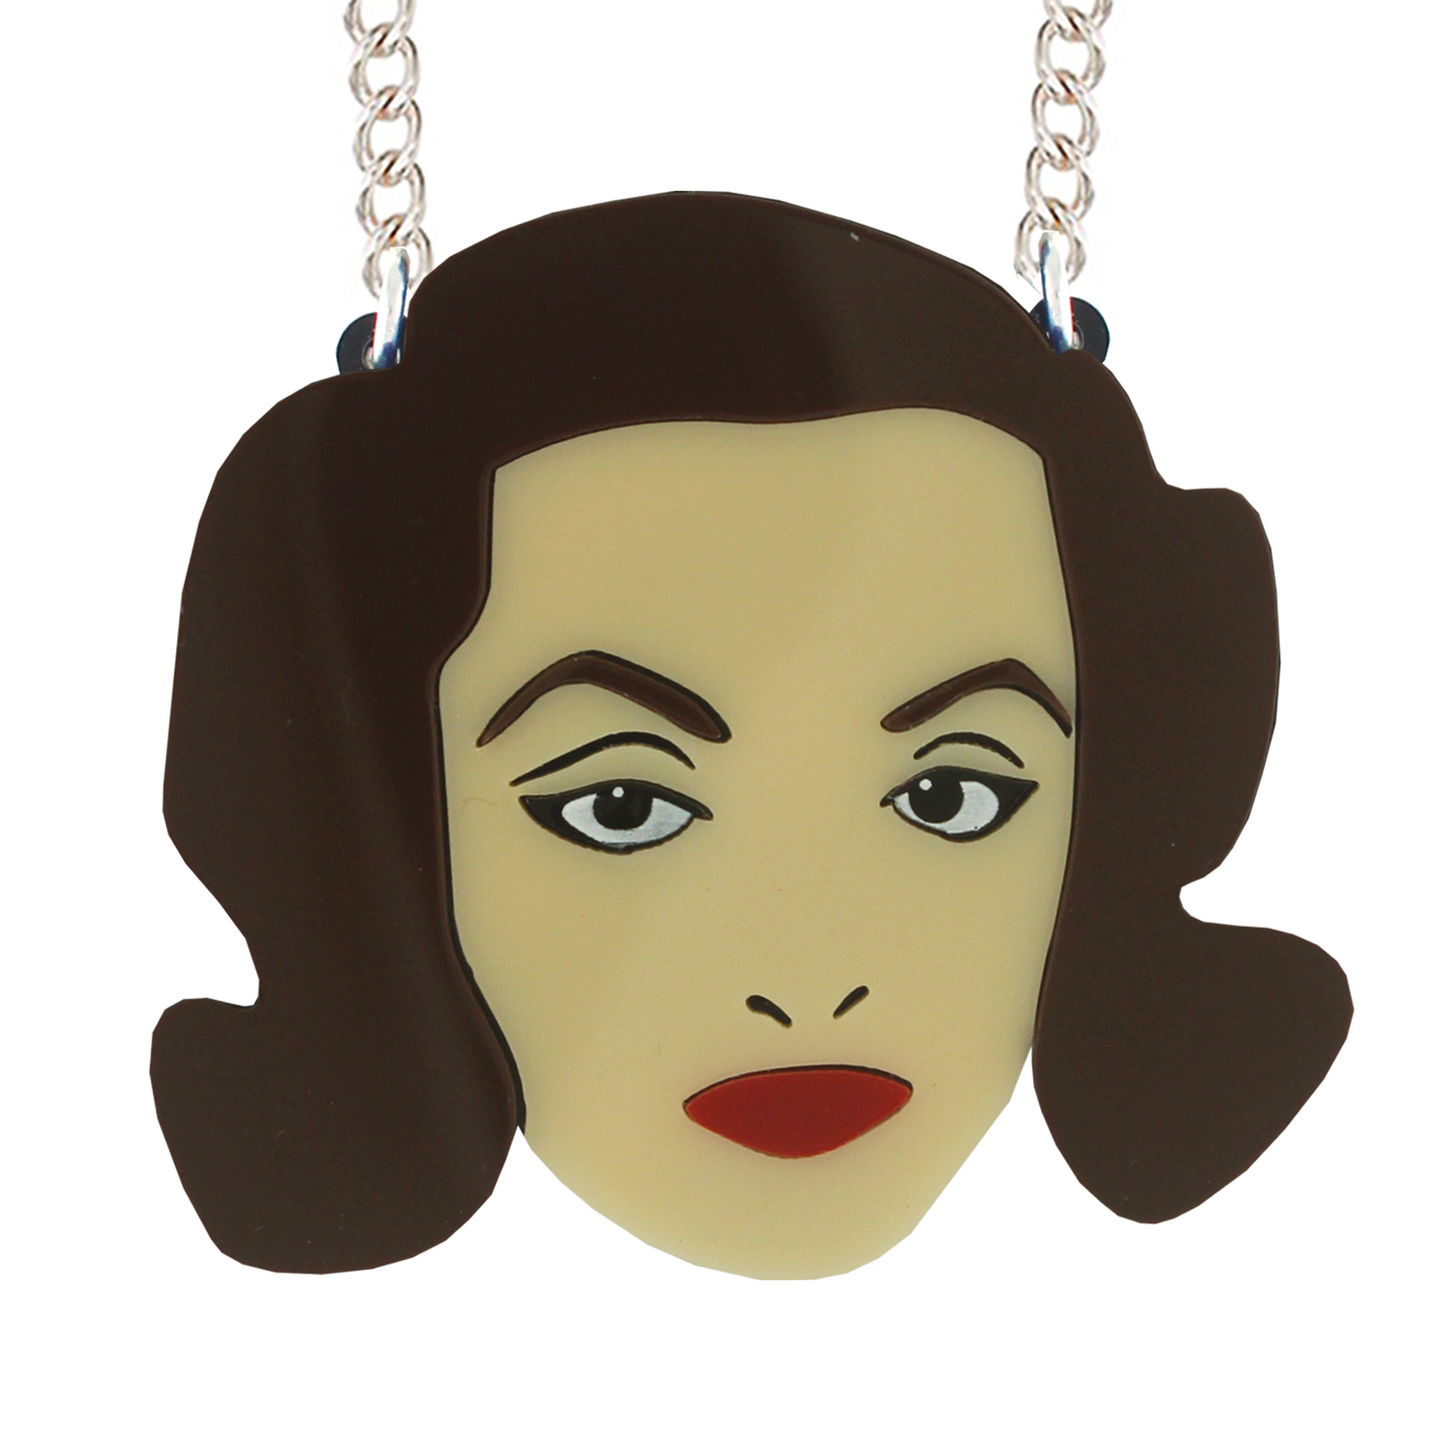 Bette Davis necklace